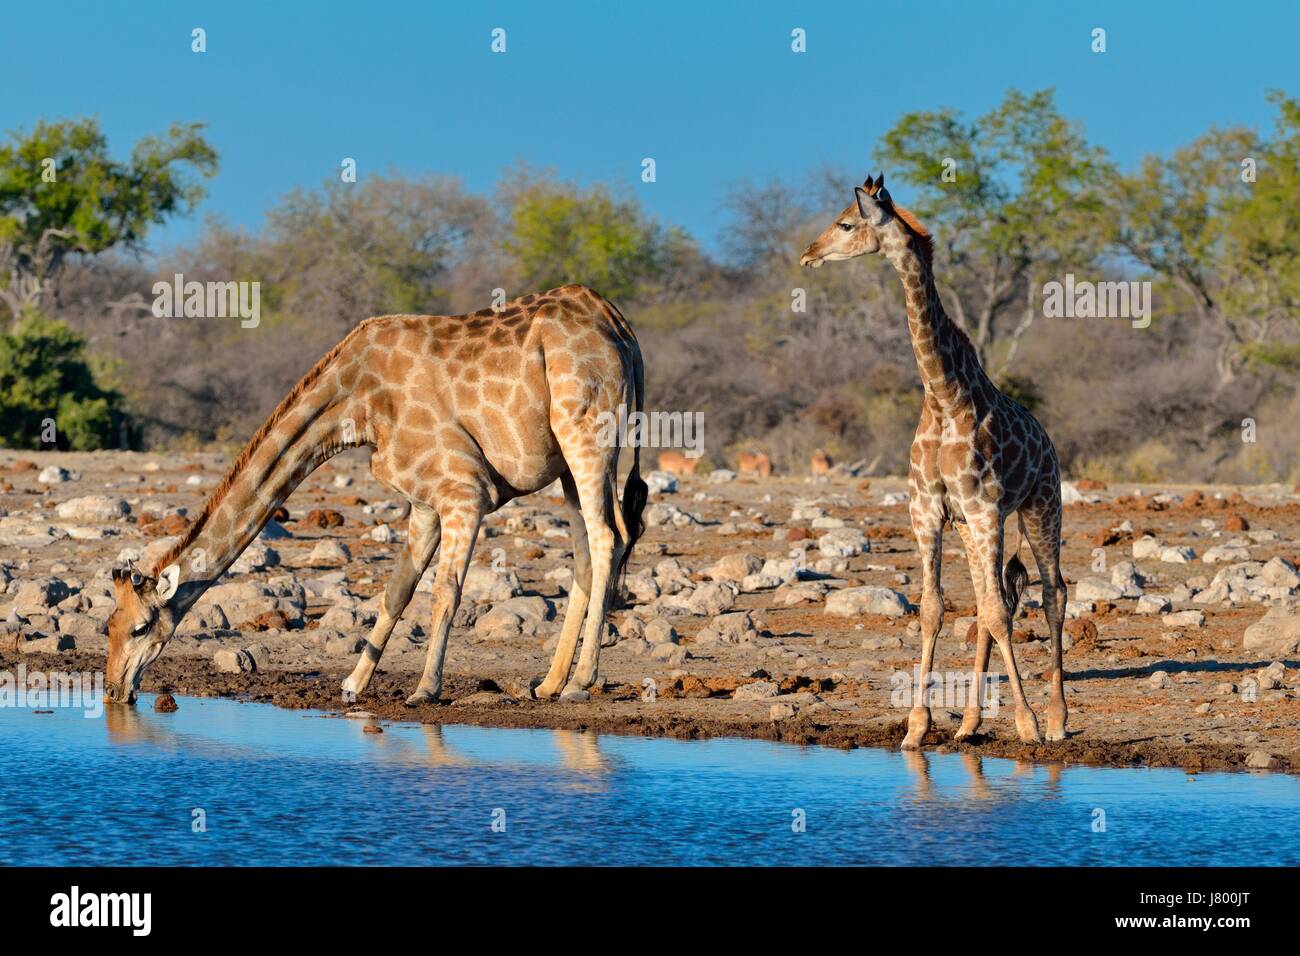 Les Girafes girafes angolais ou namibienne (Giraffa camelopardalis), la mère avec les jeunes de l'alcool au point d'Etosha National Park, Namibie, Afrique Banque D'Images